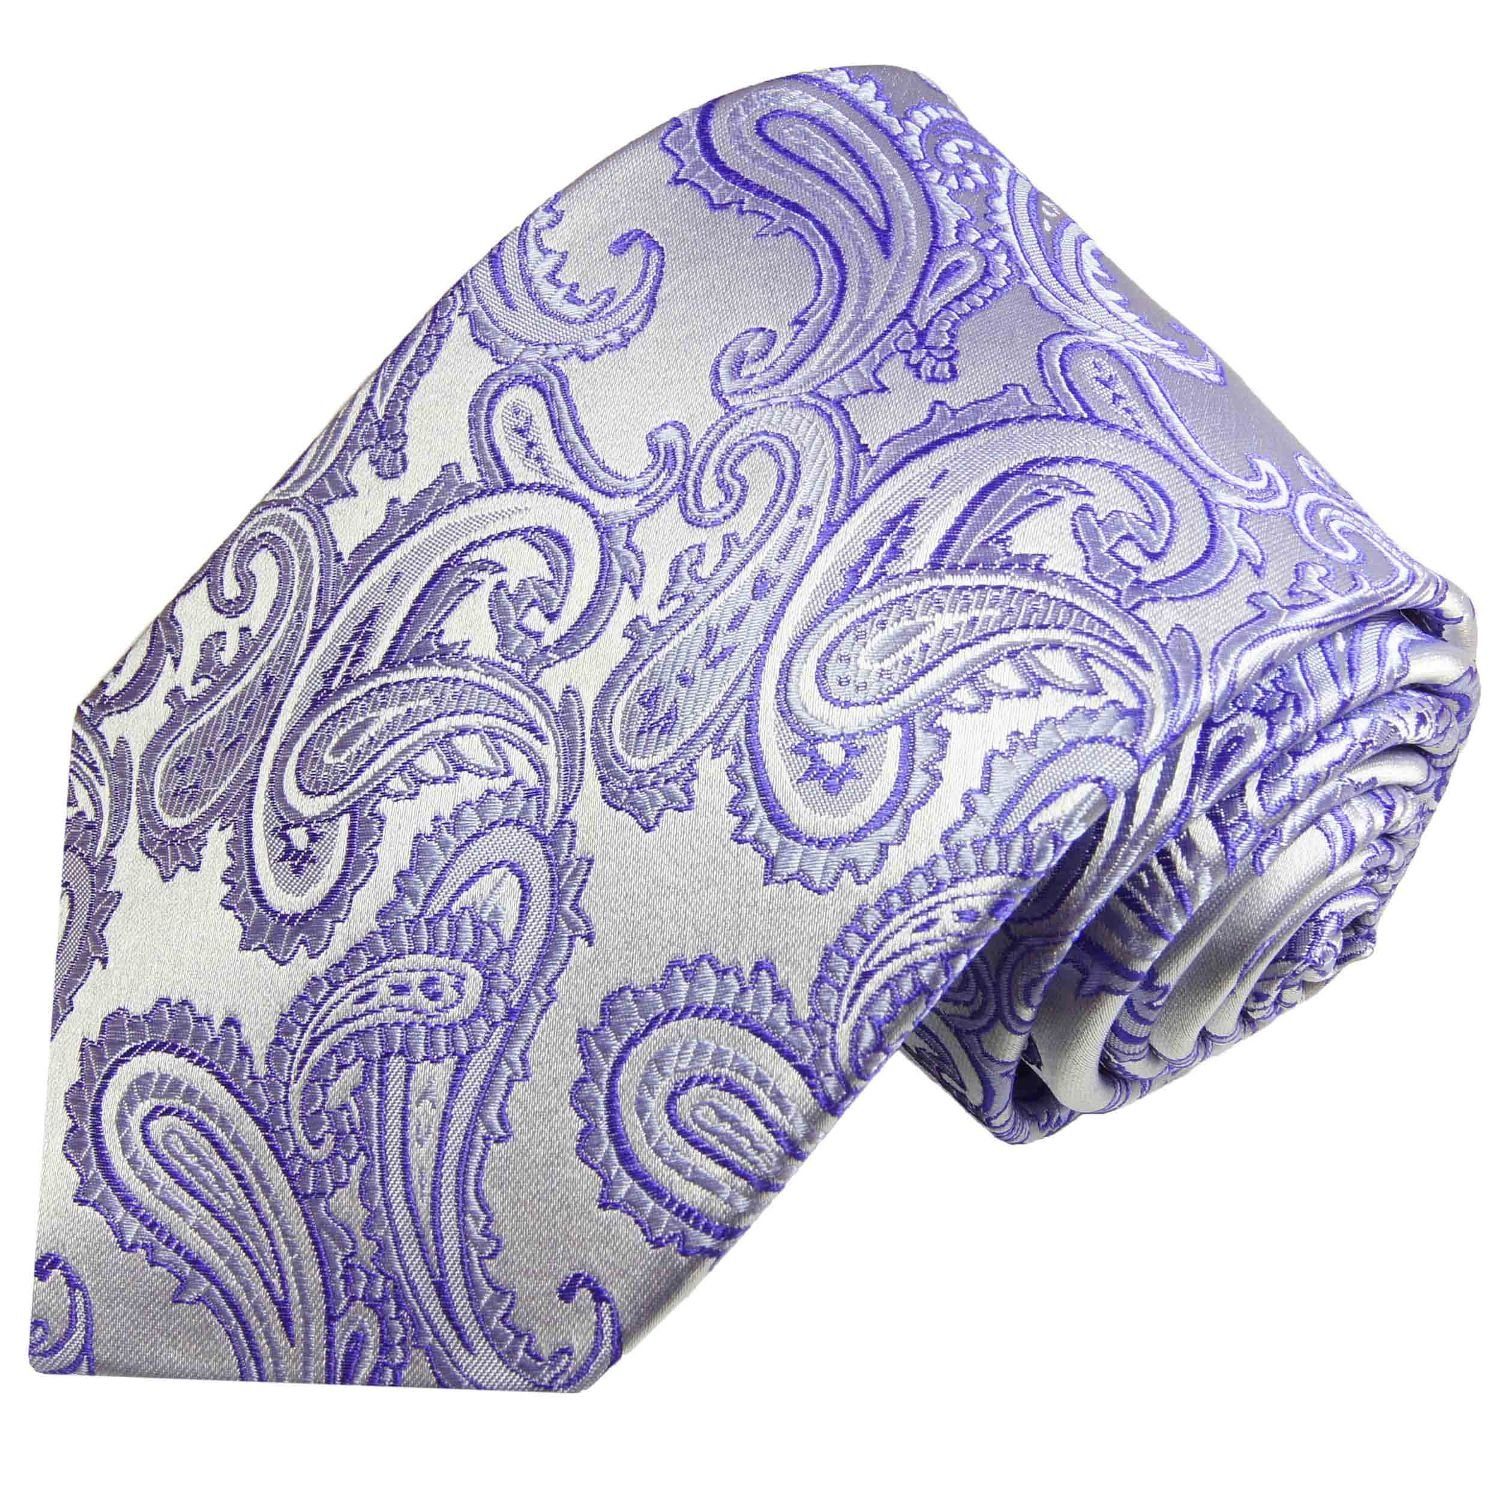 Paul Krawatte Seide paisley violett Elegante lila Seidenkrawatte Schmal 100% 996 silber Herren Malone Schlips brokat (6cm),